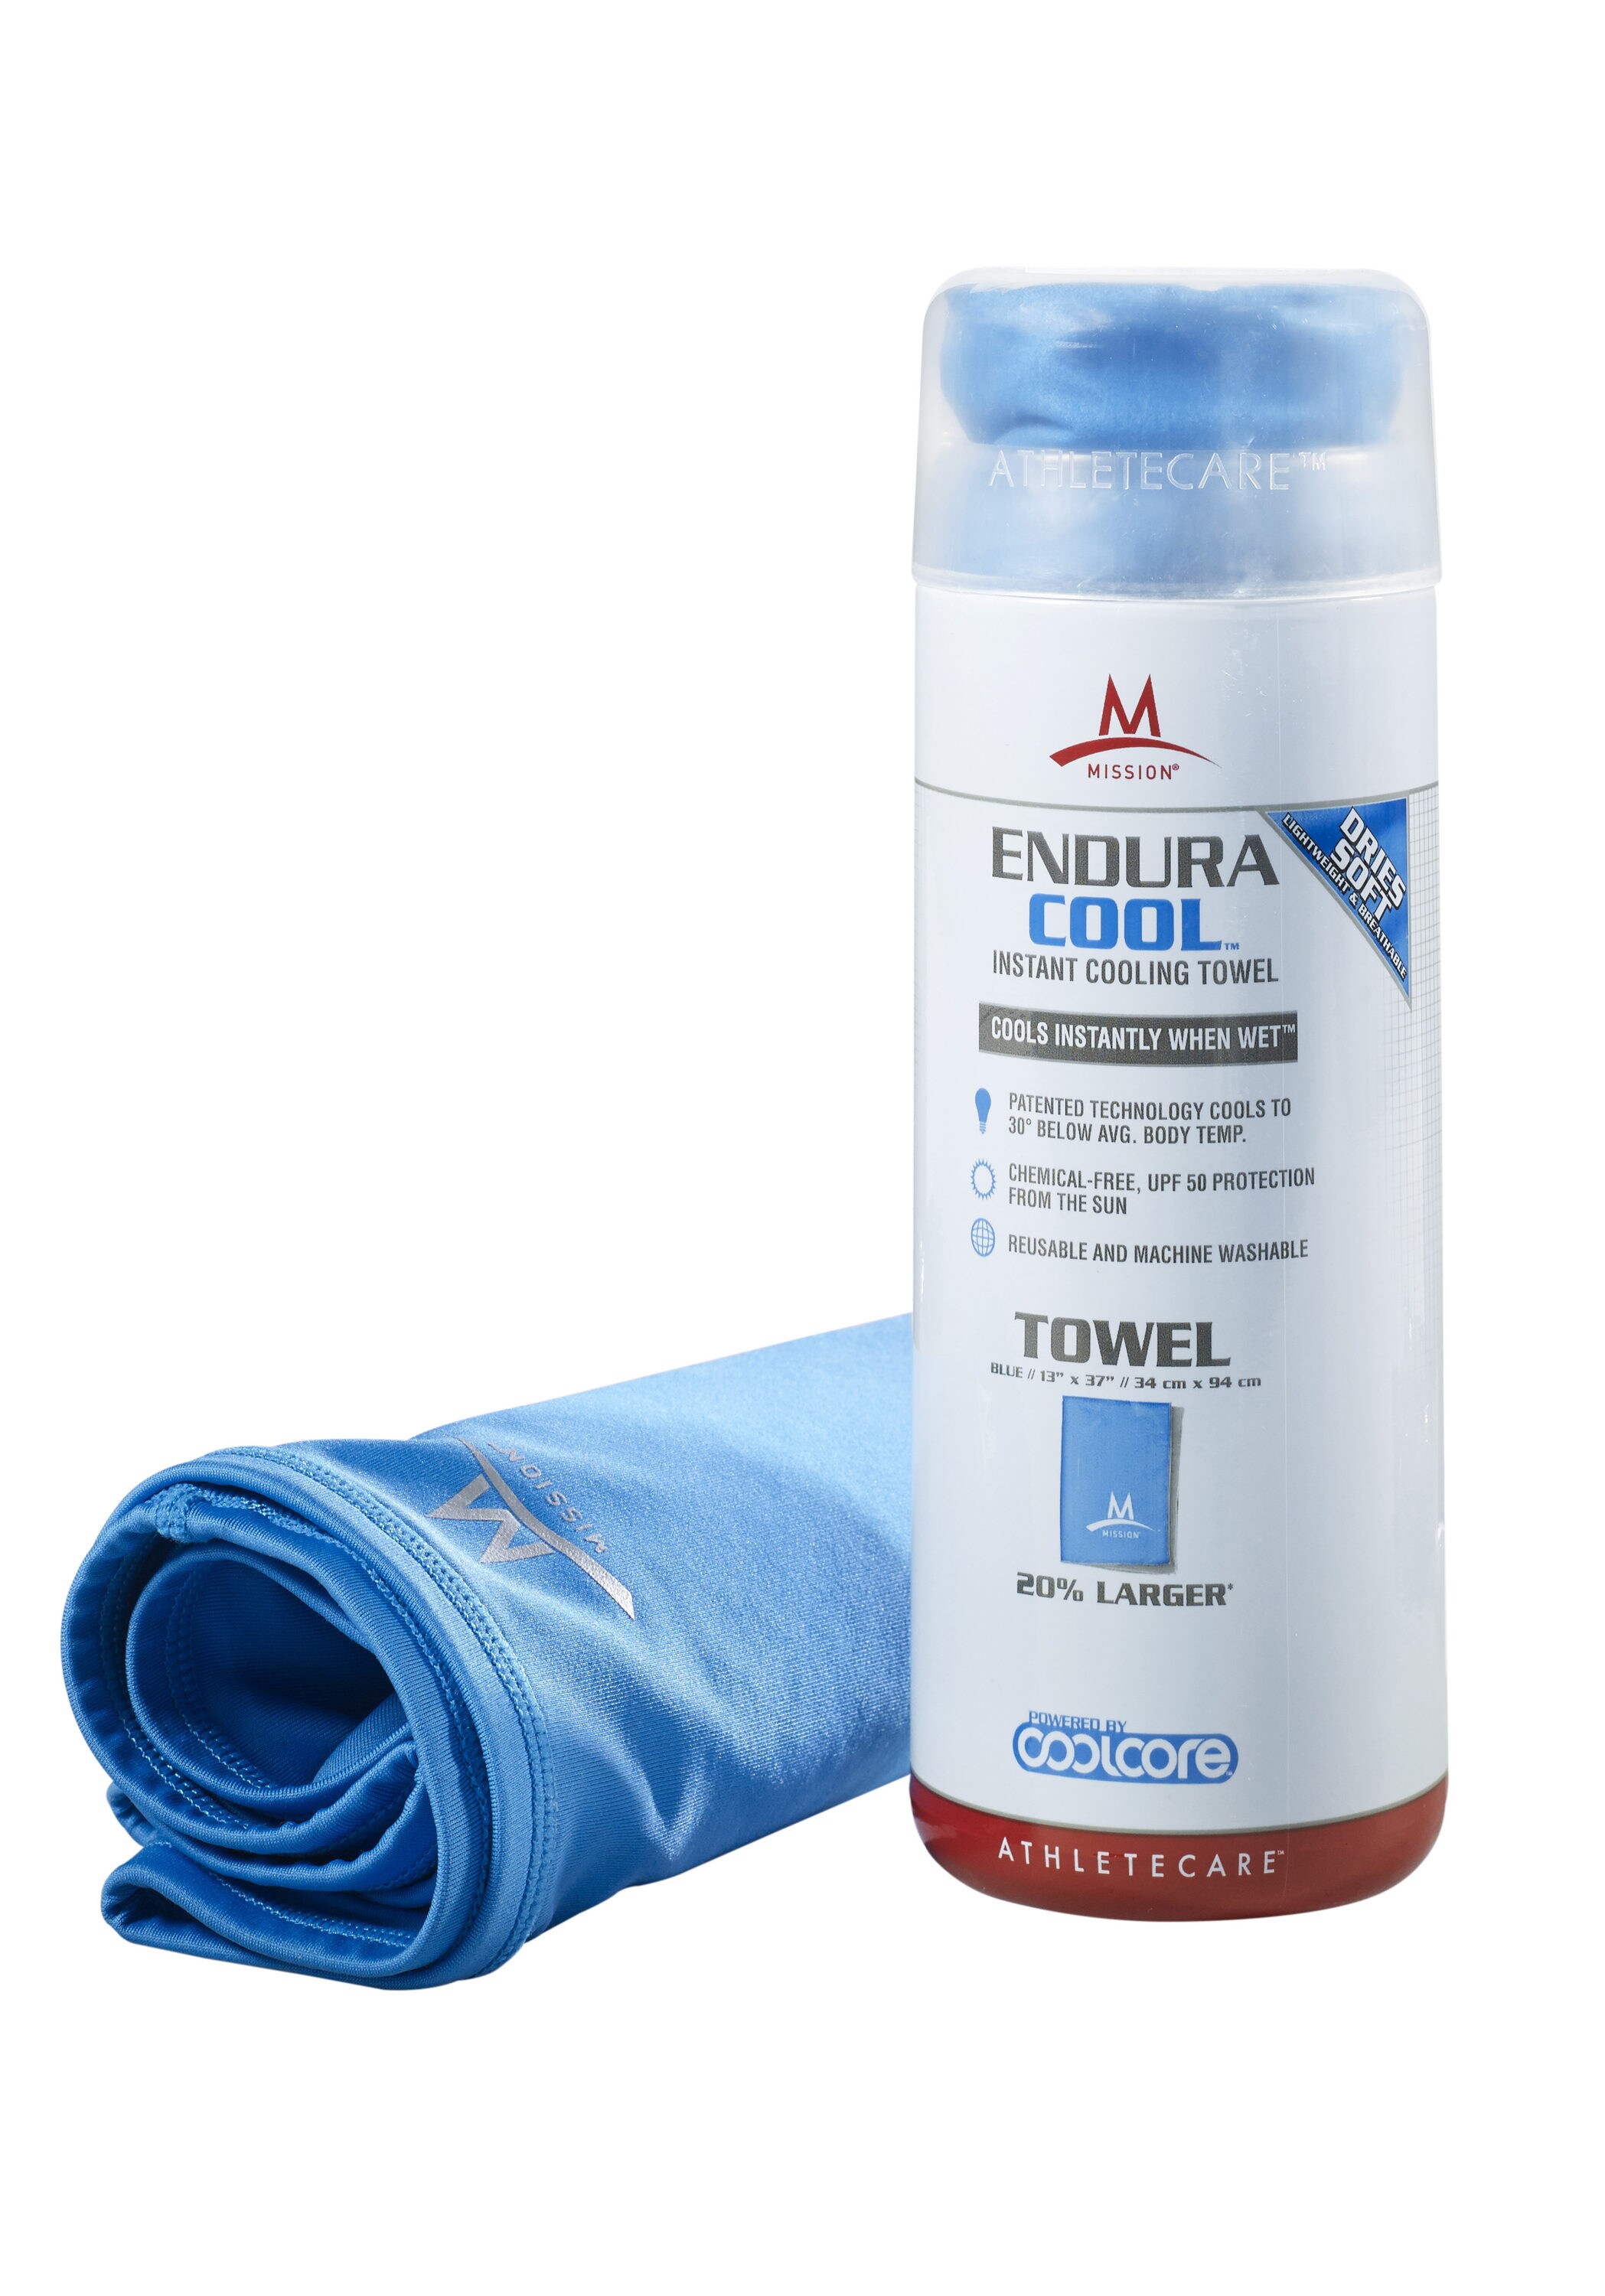 2580円 大人気の Mission Enduracool Instant Cooling Towel Blue